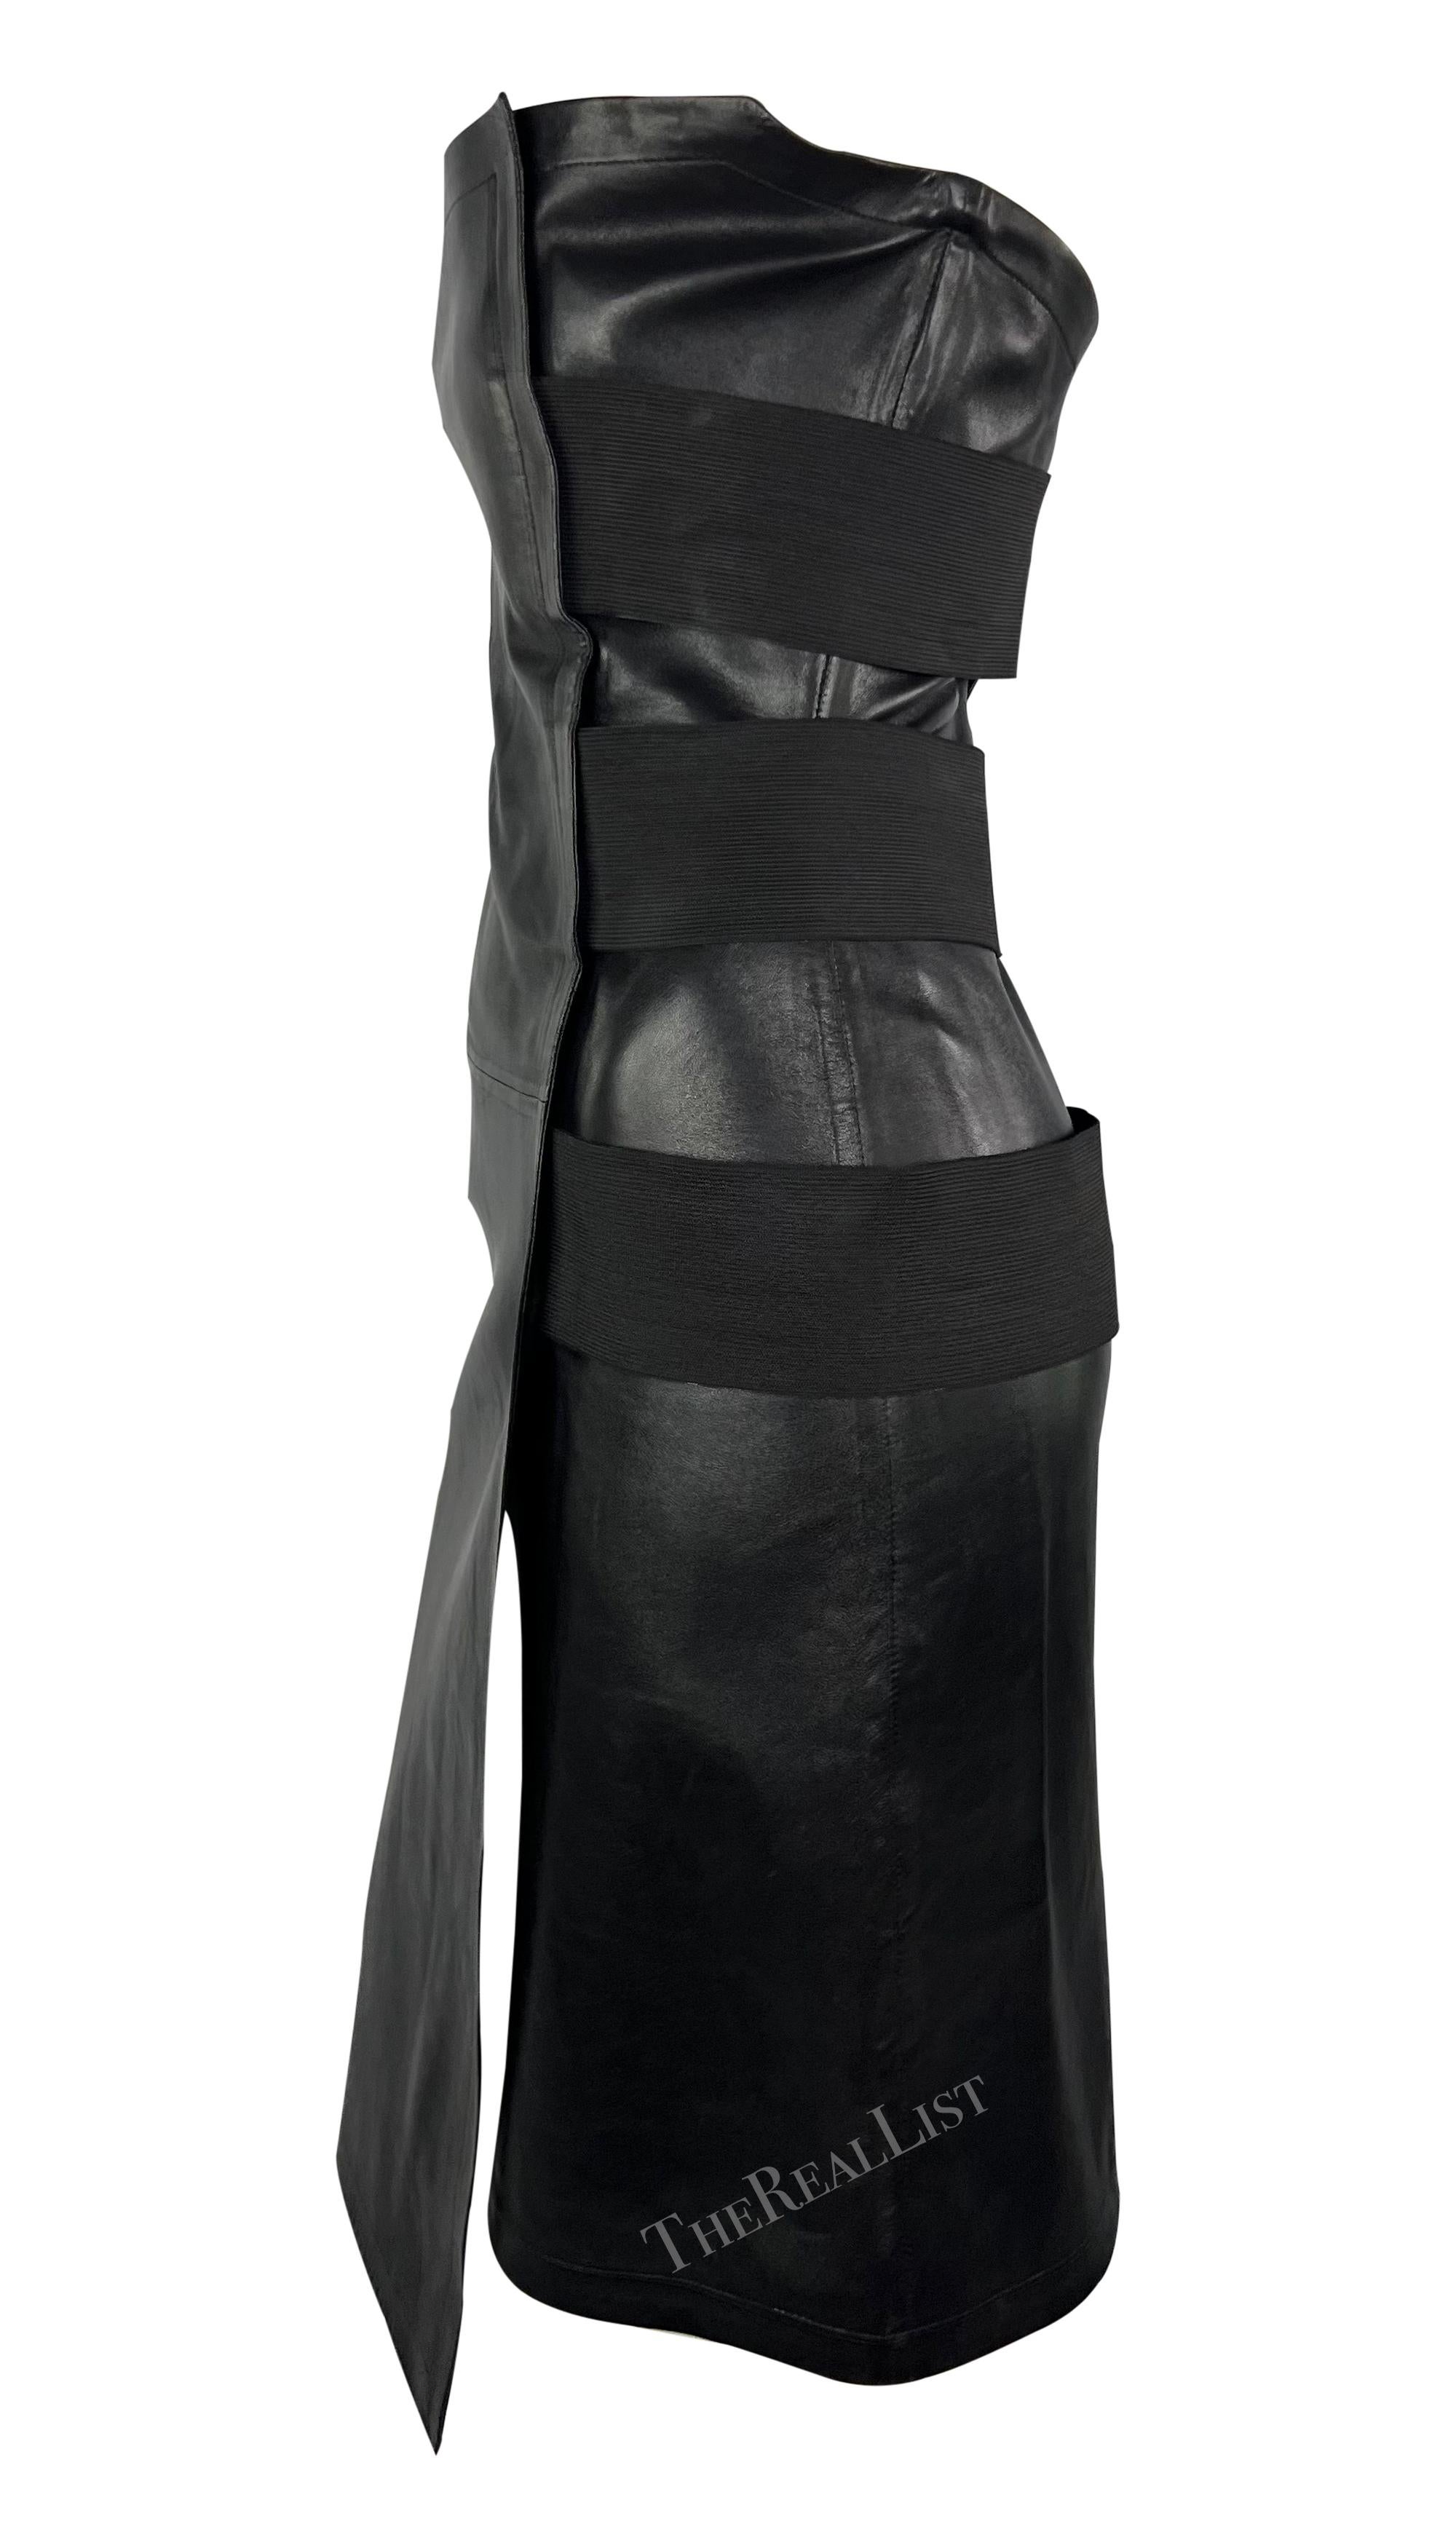 Ich präsentiere ein fabelhaftes schwarzes Yves Saint Laurent-Minikleid aus Leder, entworfen von Tom Ford. Dieses schicke trägerlose Kleid aus der Frühjahr/Sommer-Kollektion 2001 ist ganz aus schwarzem Leder gefertigt und umschließt den Körper mit